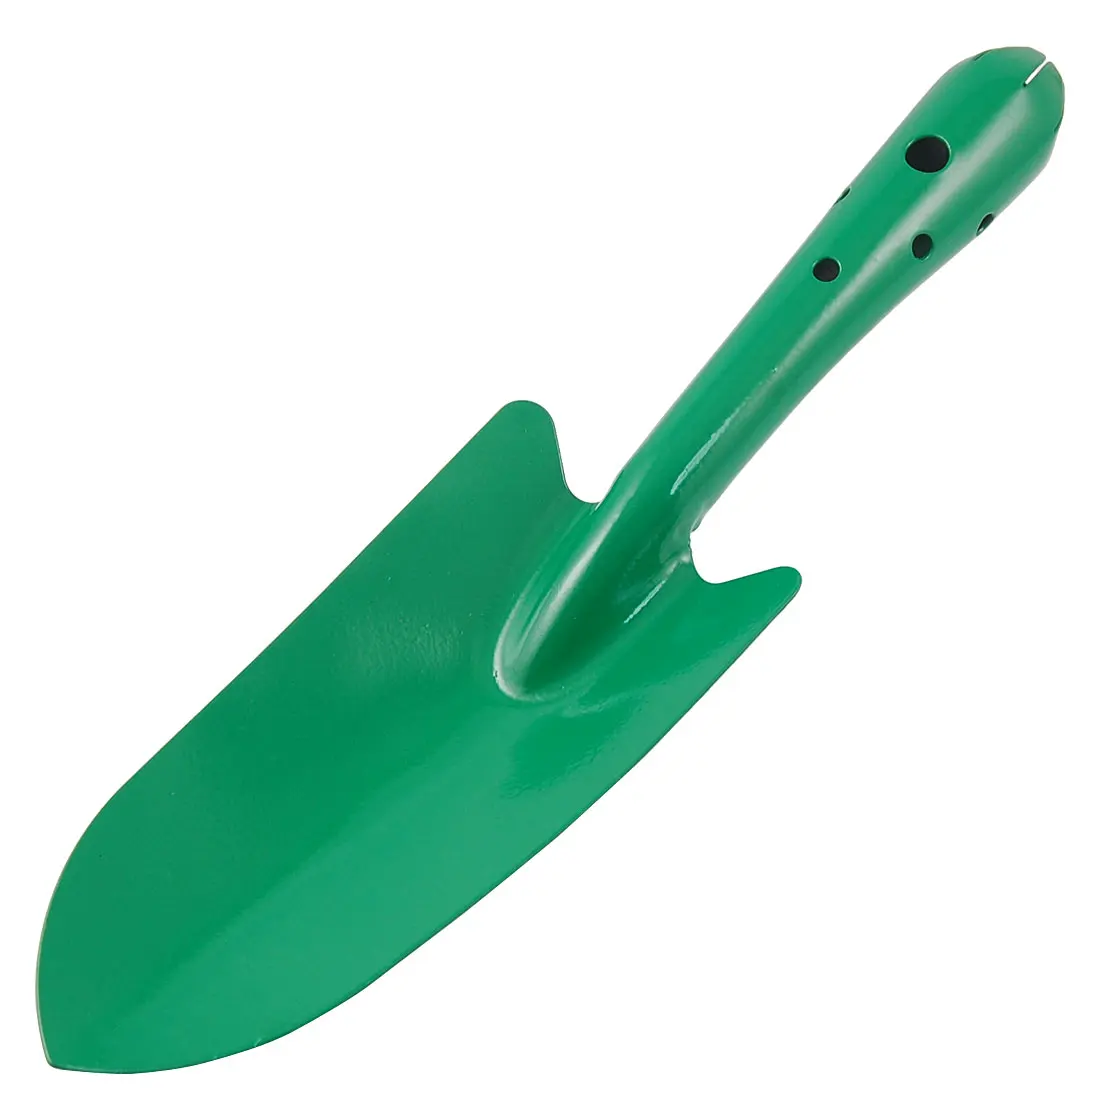 UXCELL Новый 10,5 "длина зеленый металлический круглый ручка терки сад инструмент лопатой стороны отлично подходит для дома, газон, семян